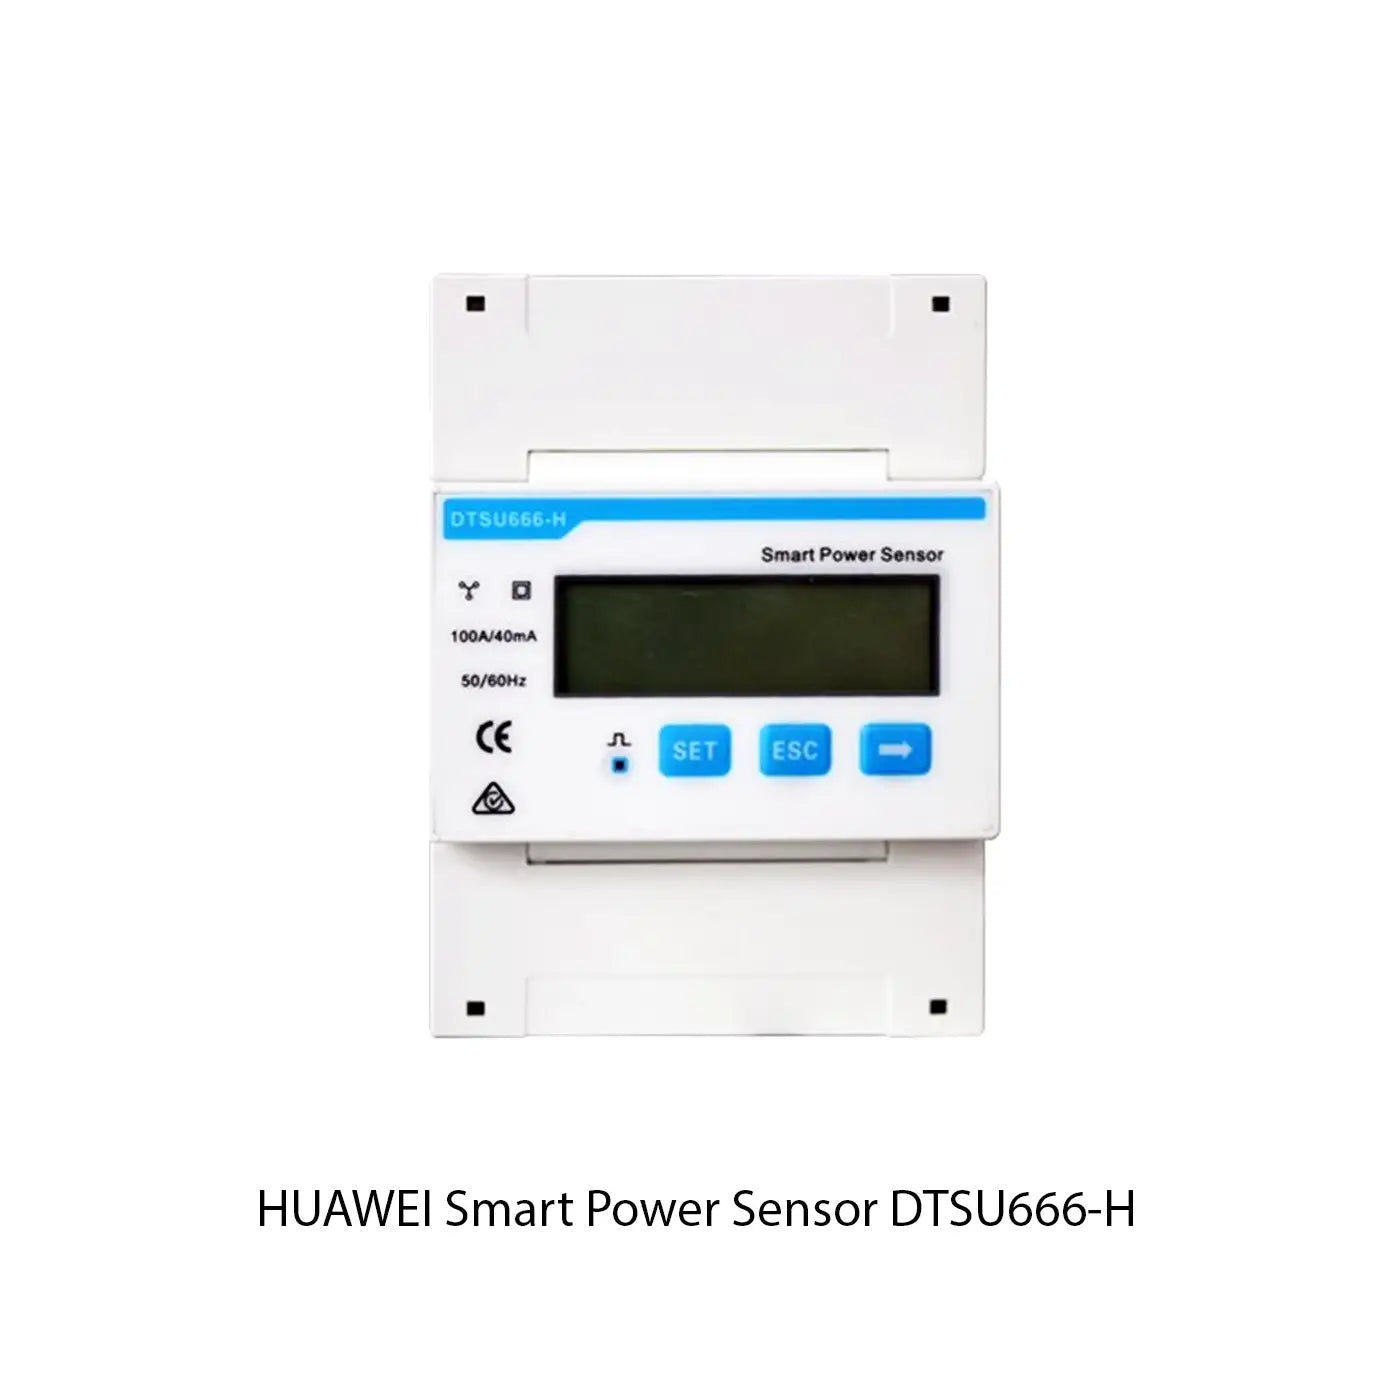 Huawei Smart Power Sensor DTSU666-H